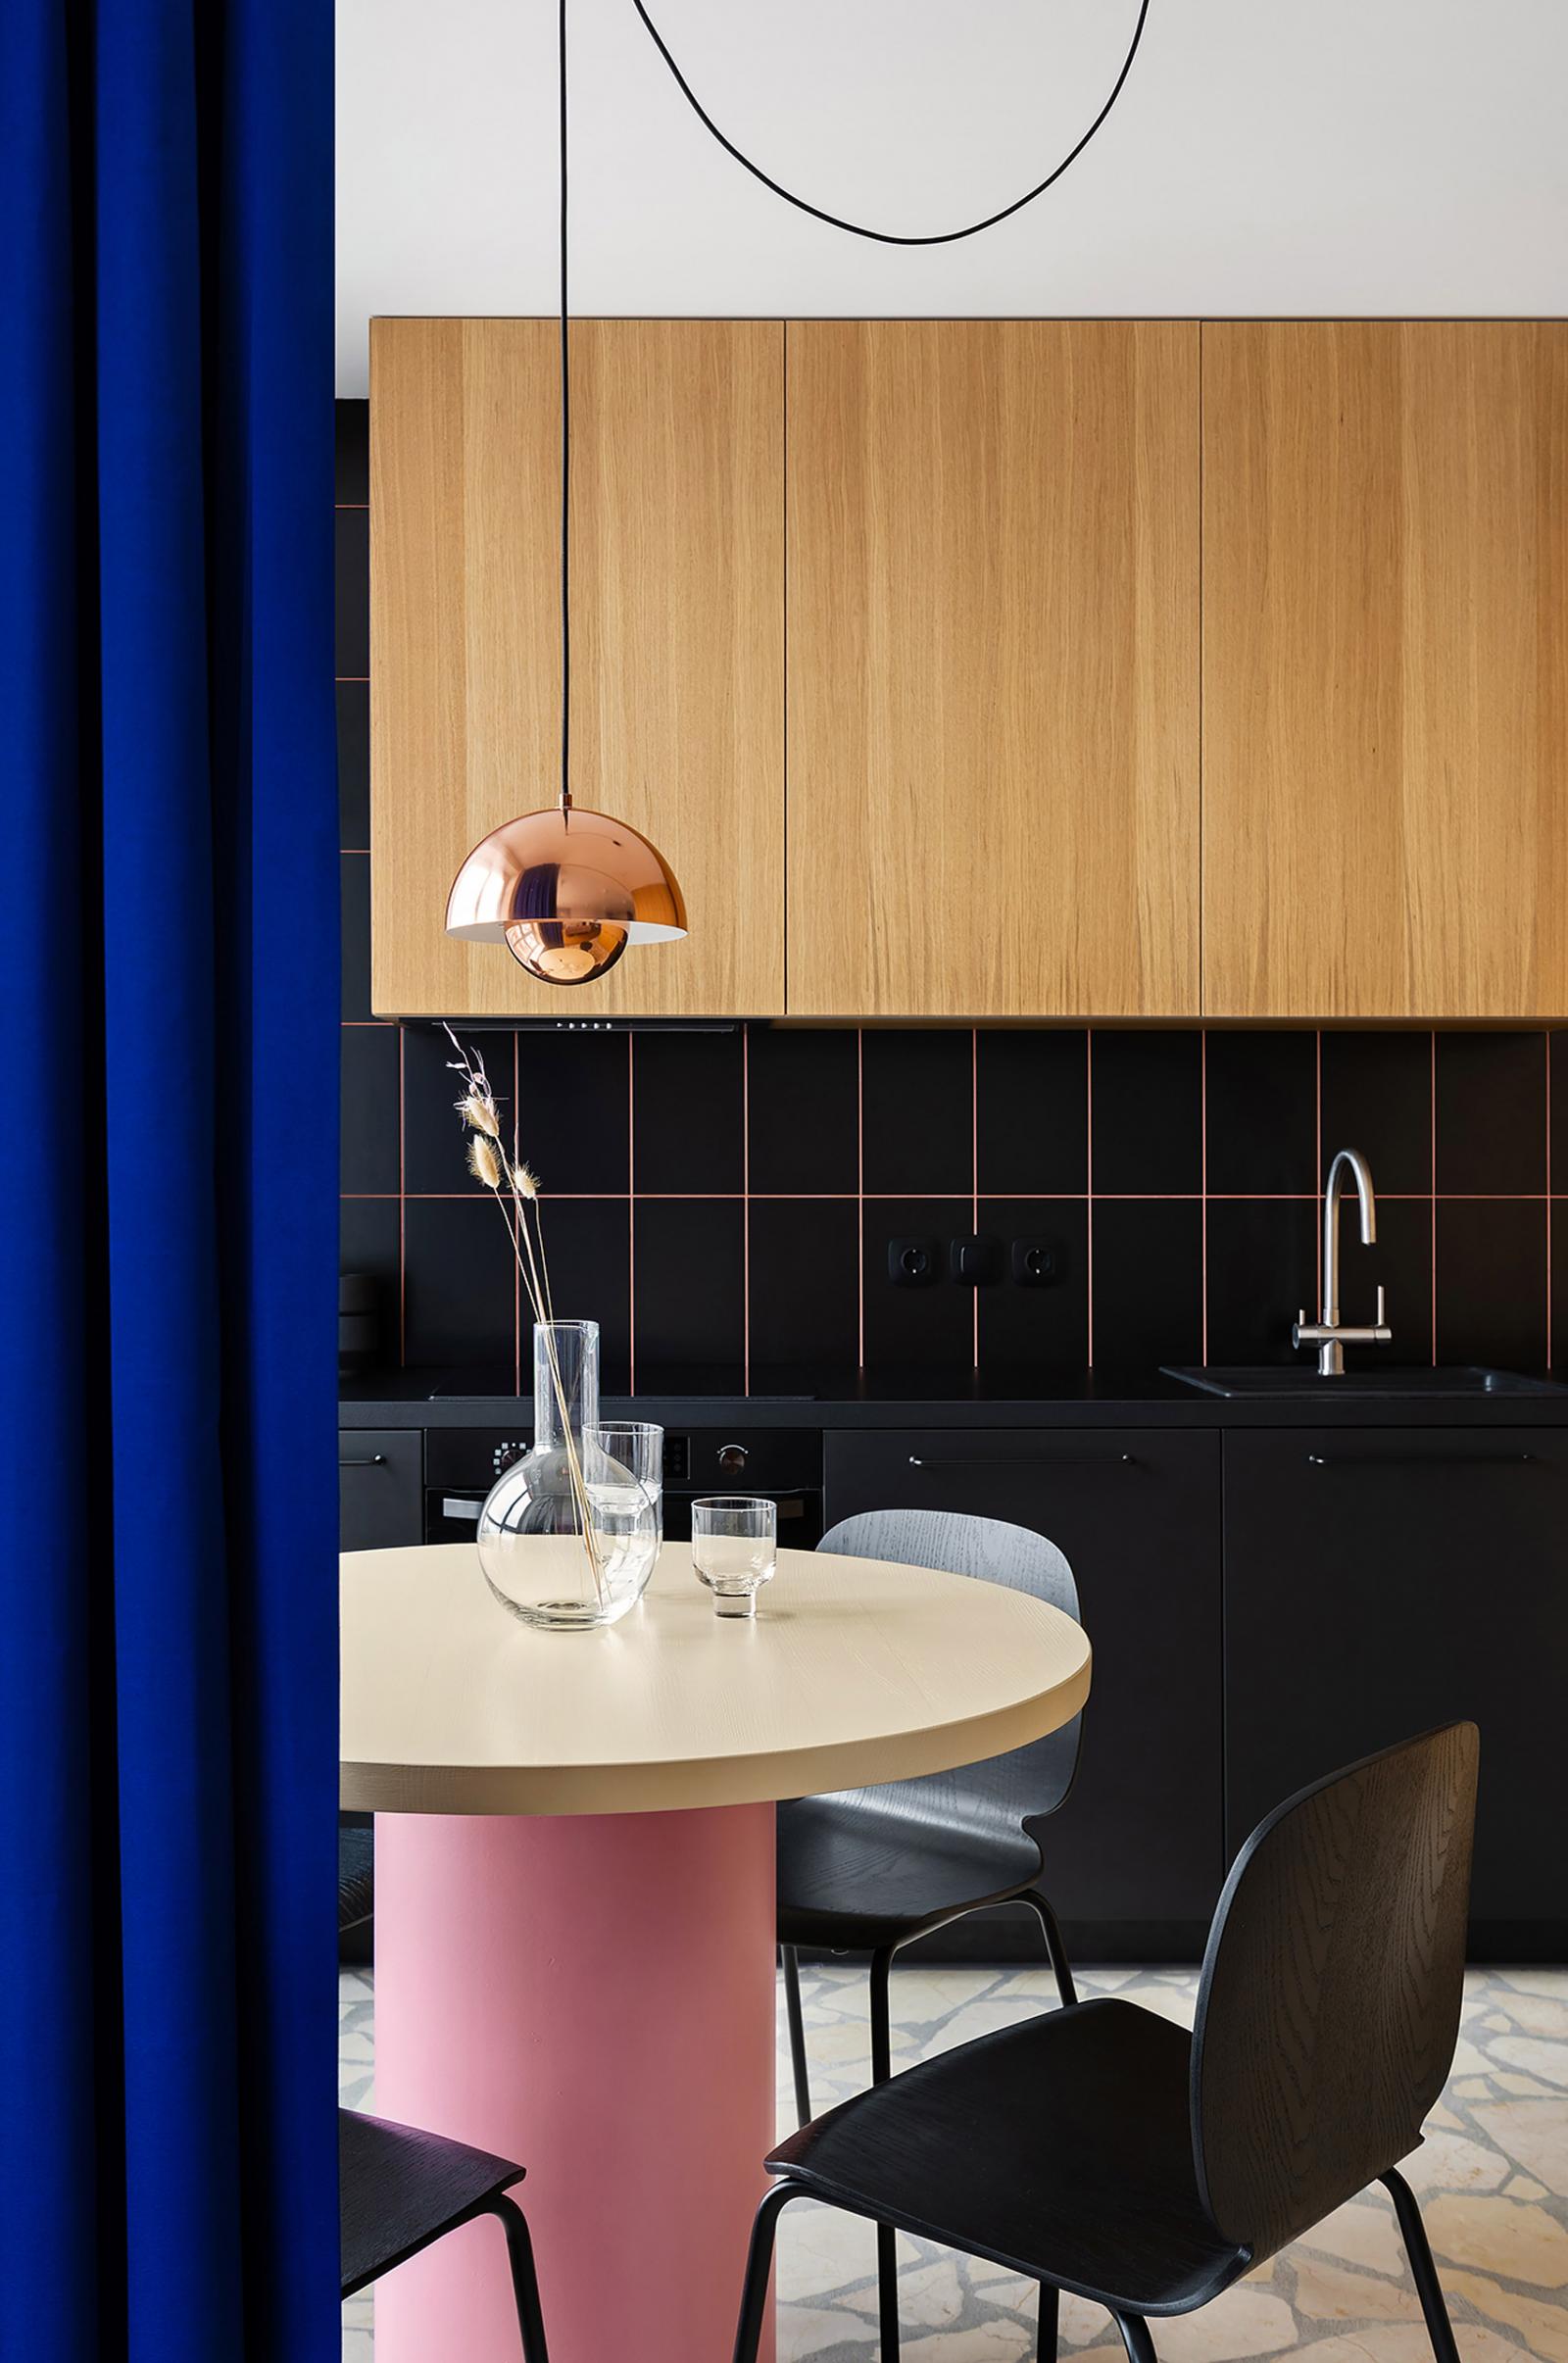 Hình ảnh một góc phòng bếp căn hộ 65m2 với bàn tròn màu hồng, tủ gỗ, rèm cửa màu xanh coban